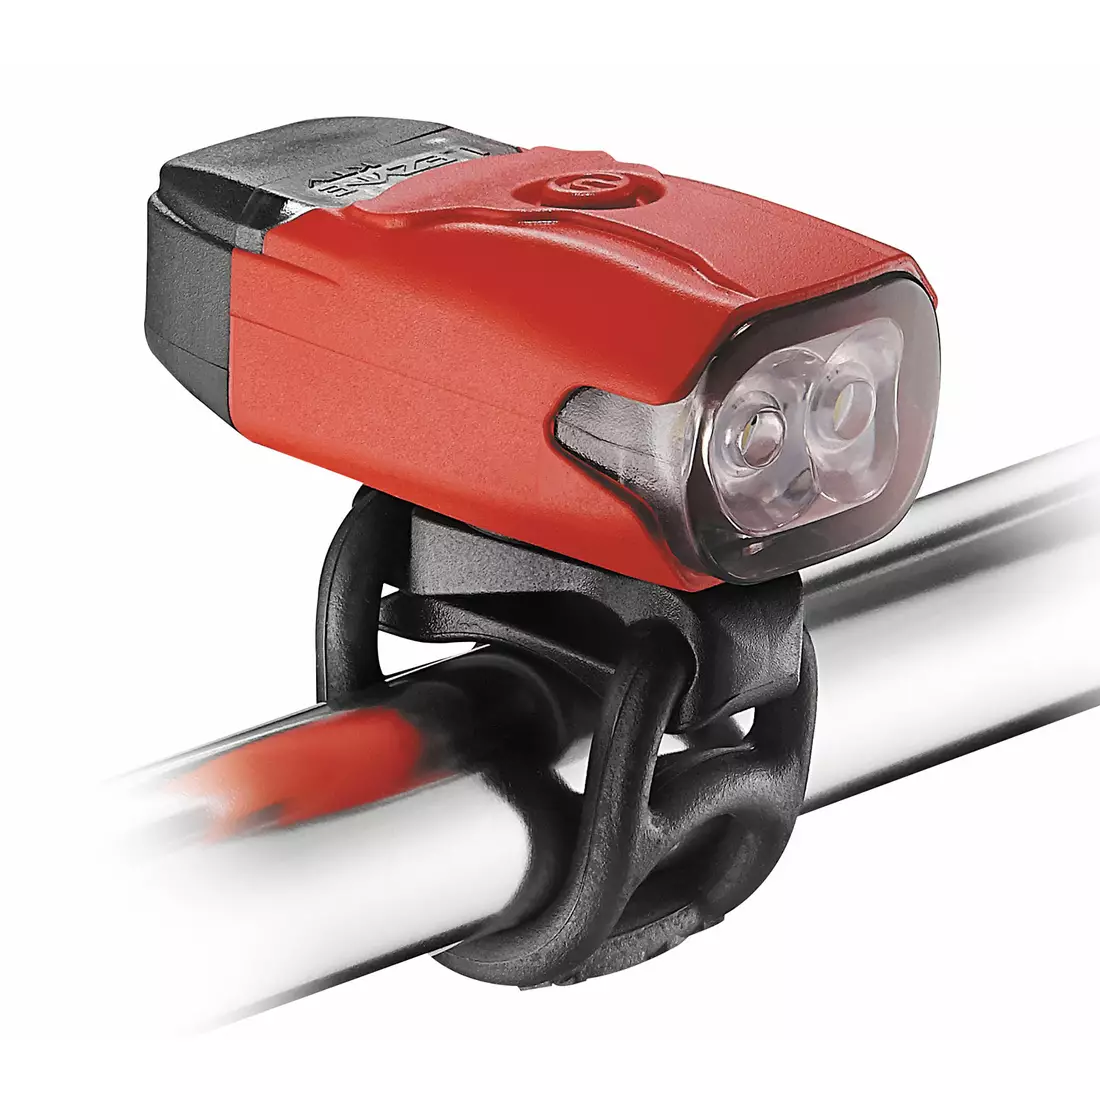 Far LEZYNE LED KTV DRIVE 180 lumeni, USB roșu (NOU) LZN-1-LED-12F-V311